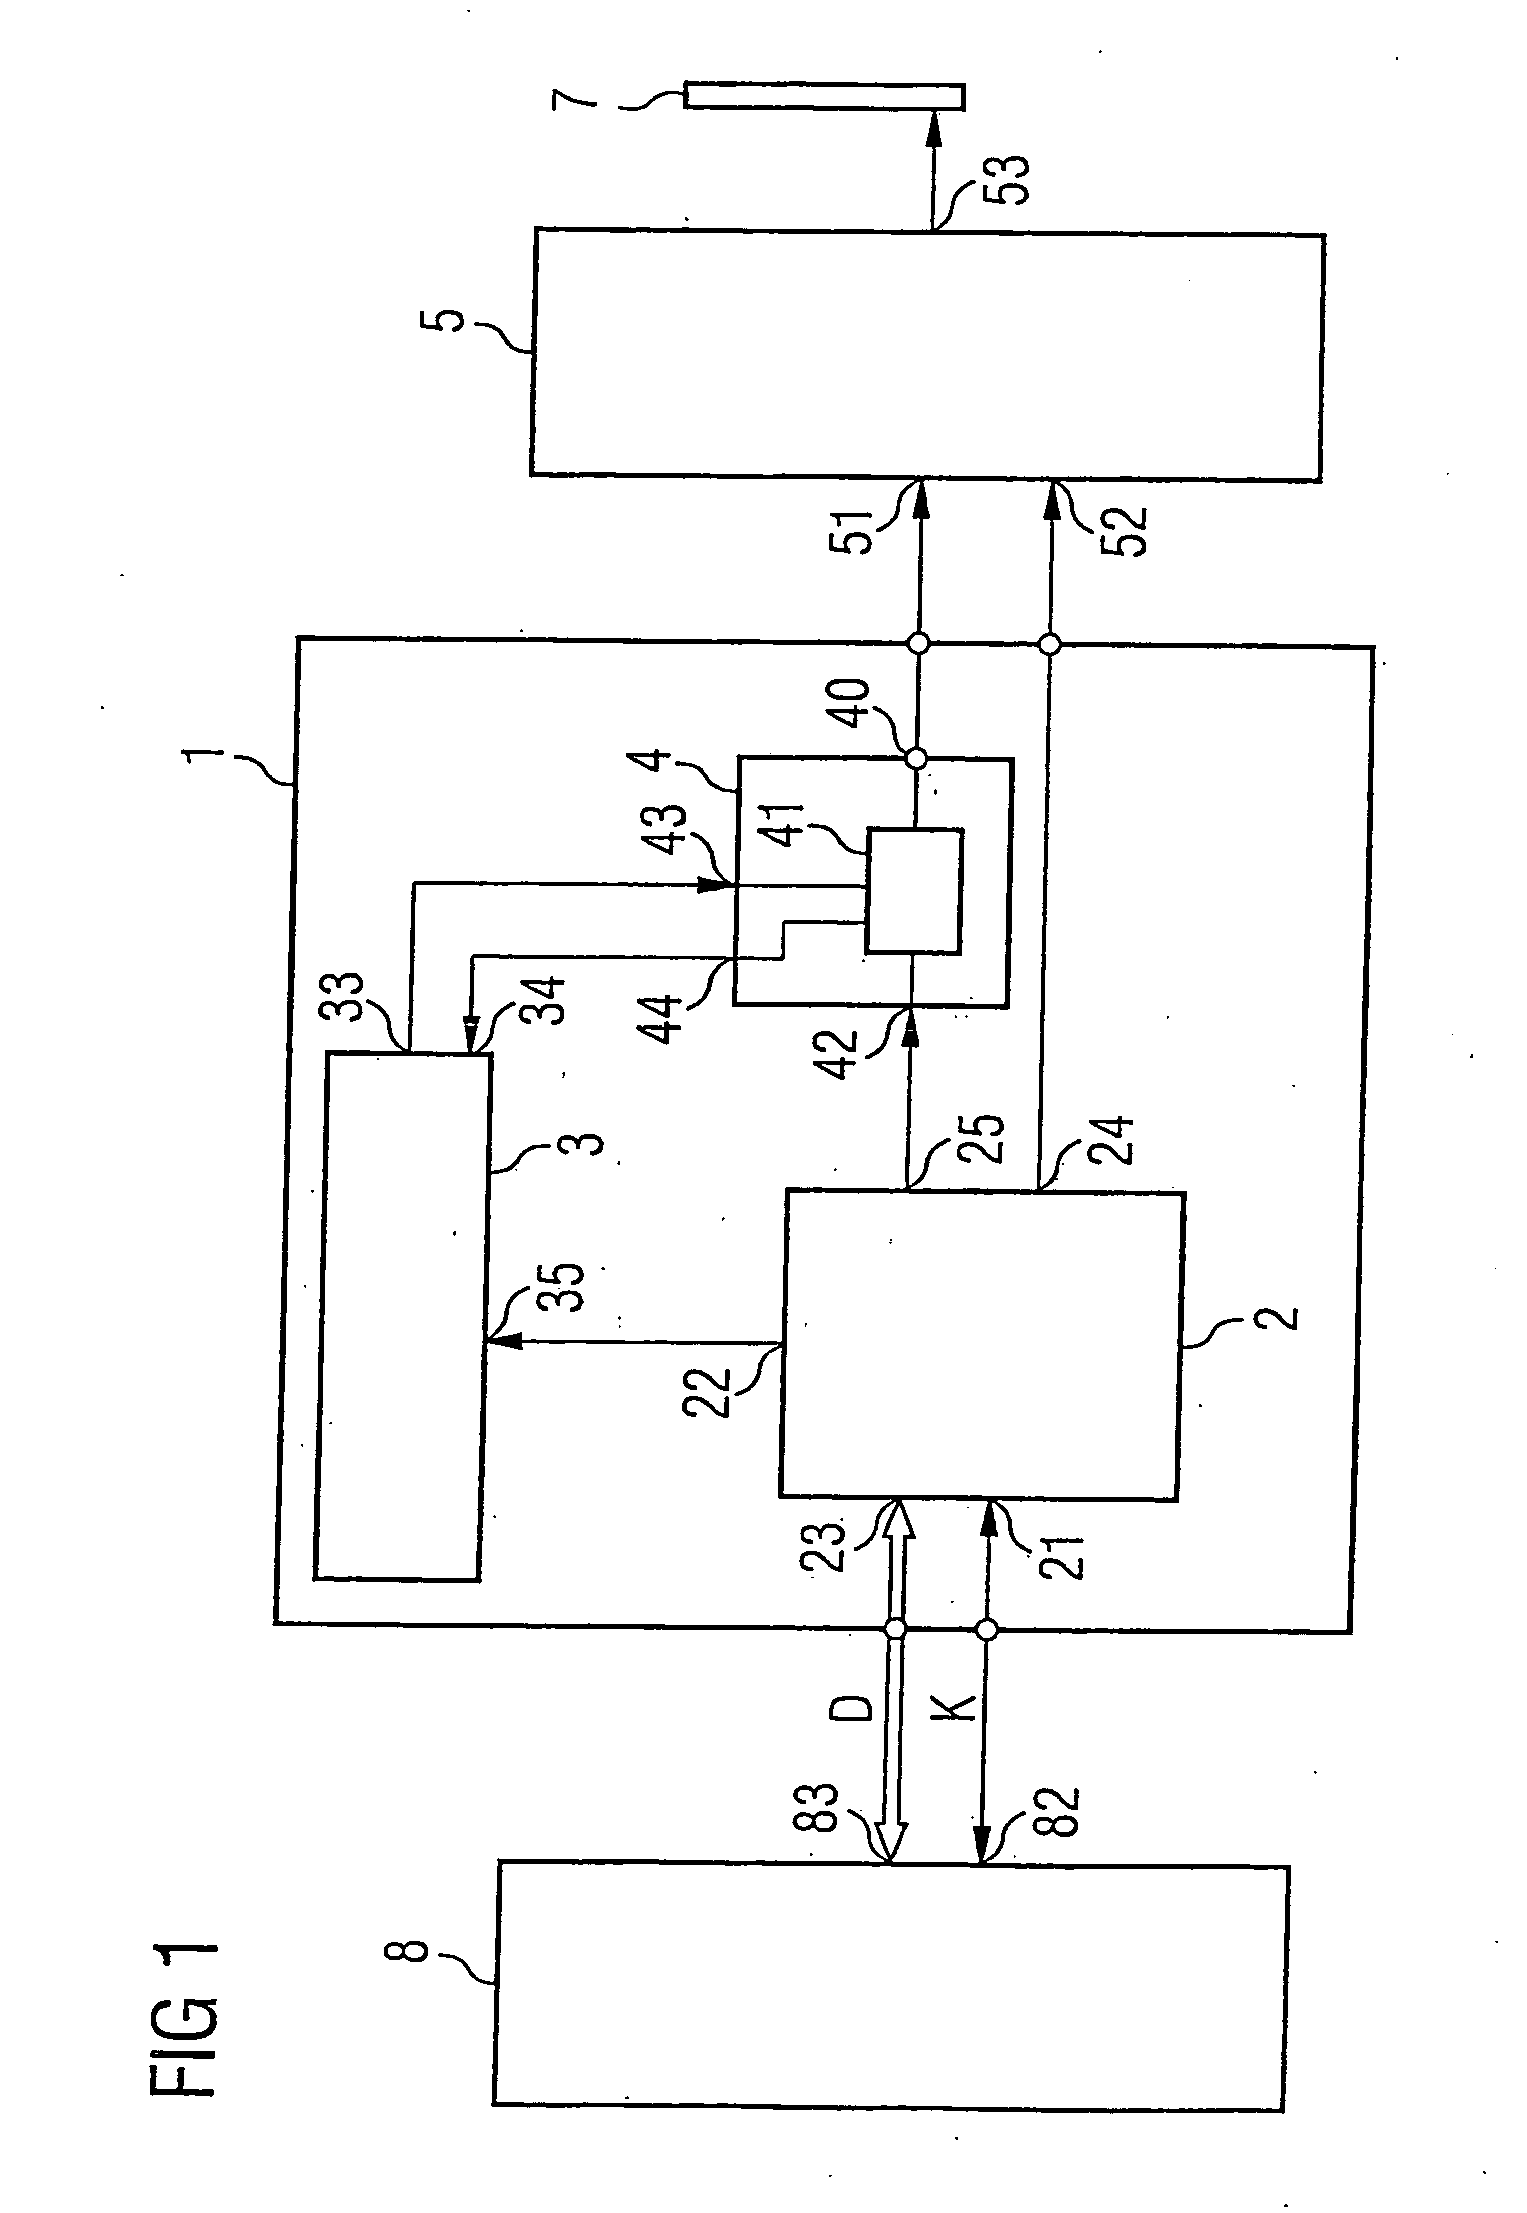 Transmission arrangement and method for operating an amplifier in a transmission arrangement